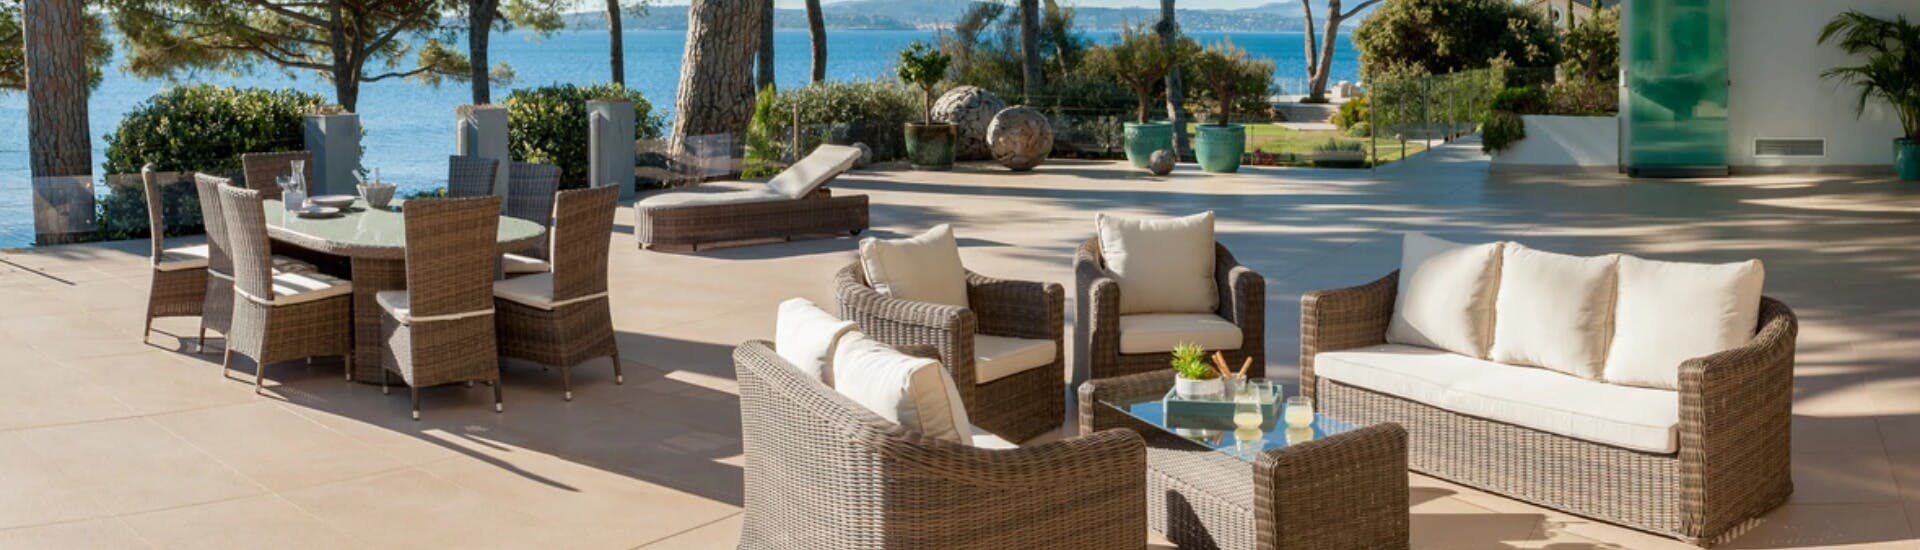 Une terrasse ensoleillée avec vue sur mer et de nombreux mobiliers de jardin